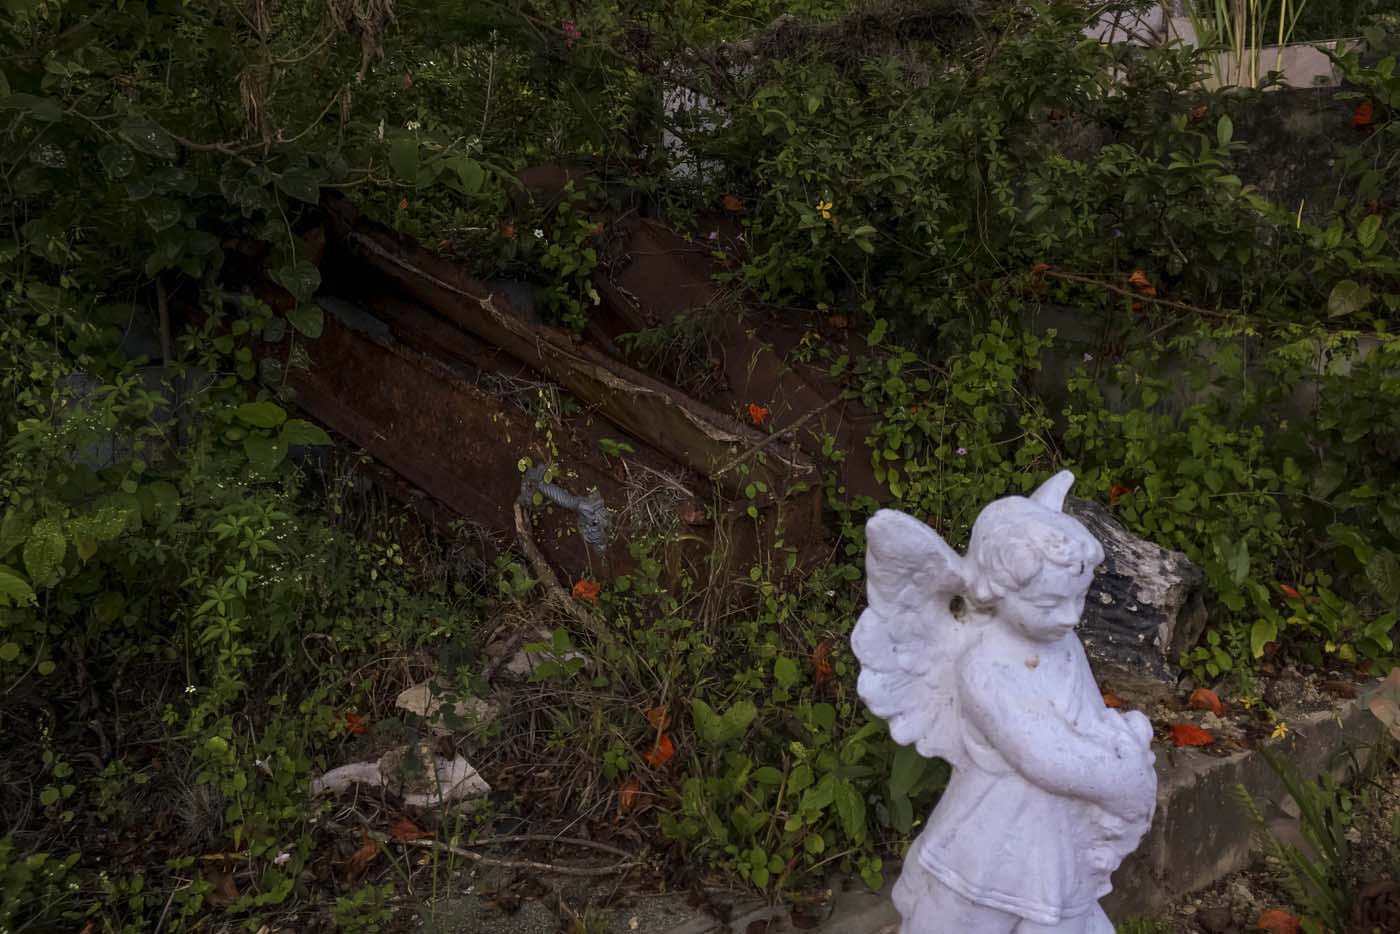 Aguacero causó desastres en el Cementerio de Los Teques y dejó ataúdes a la intemperie